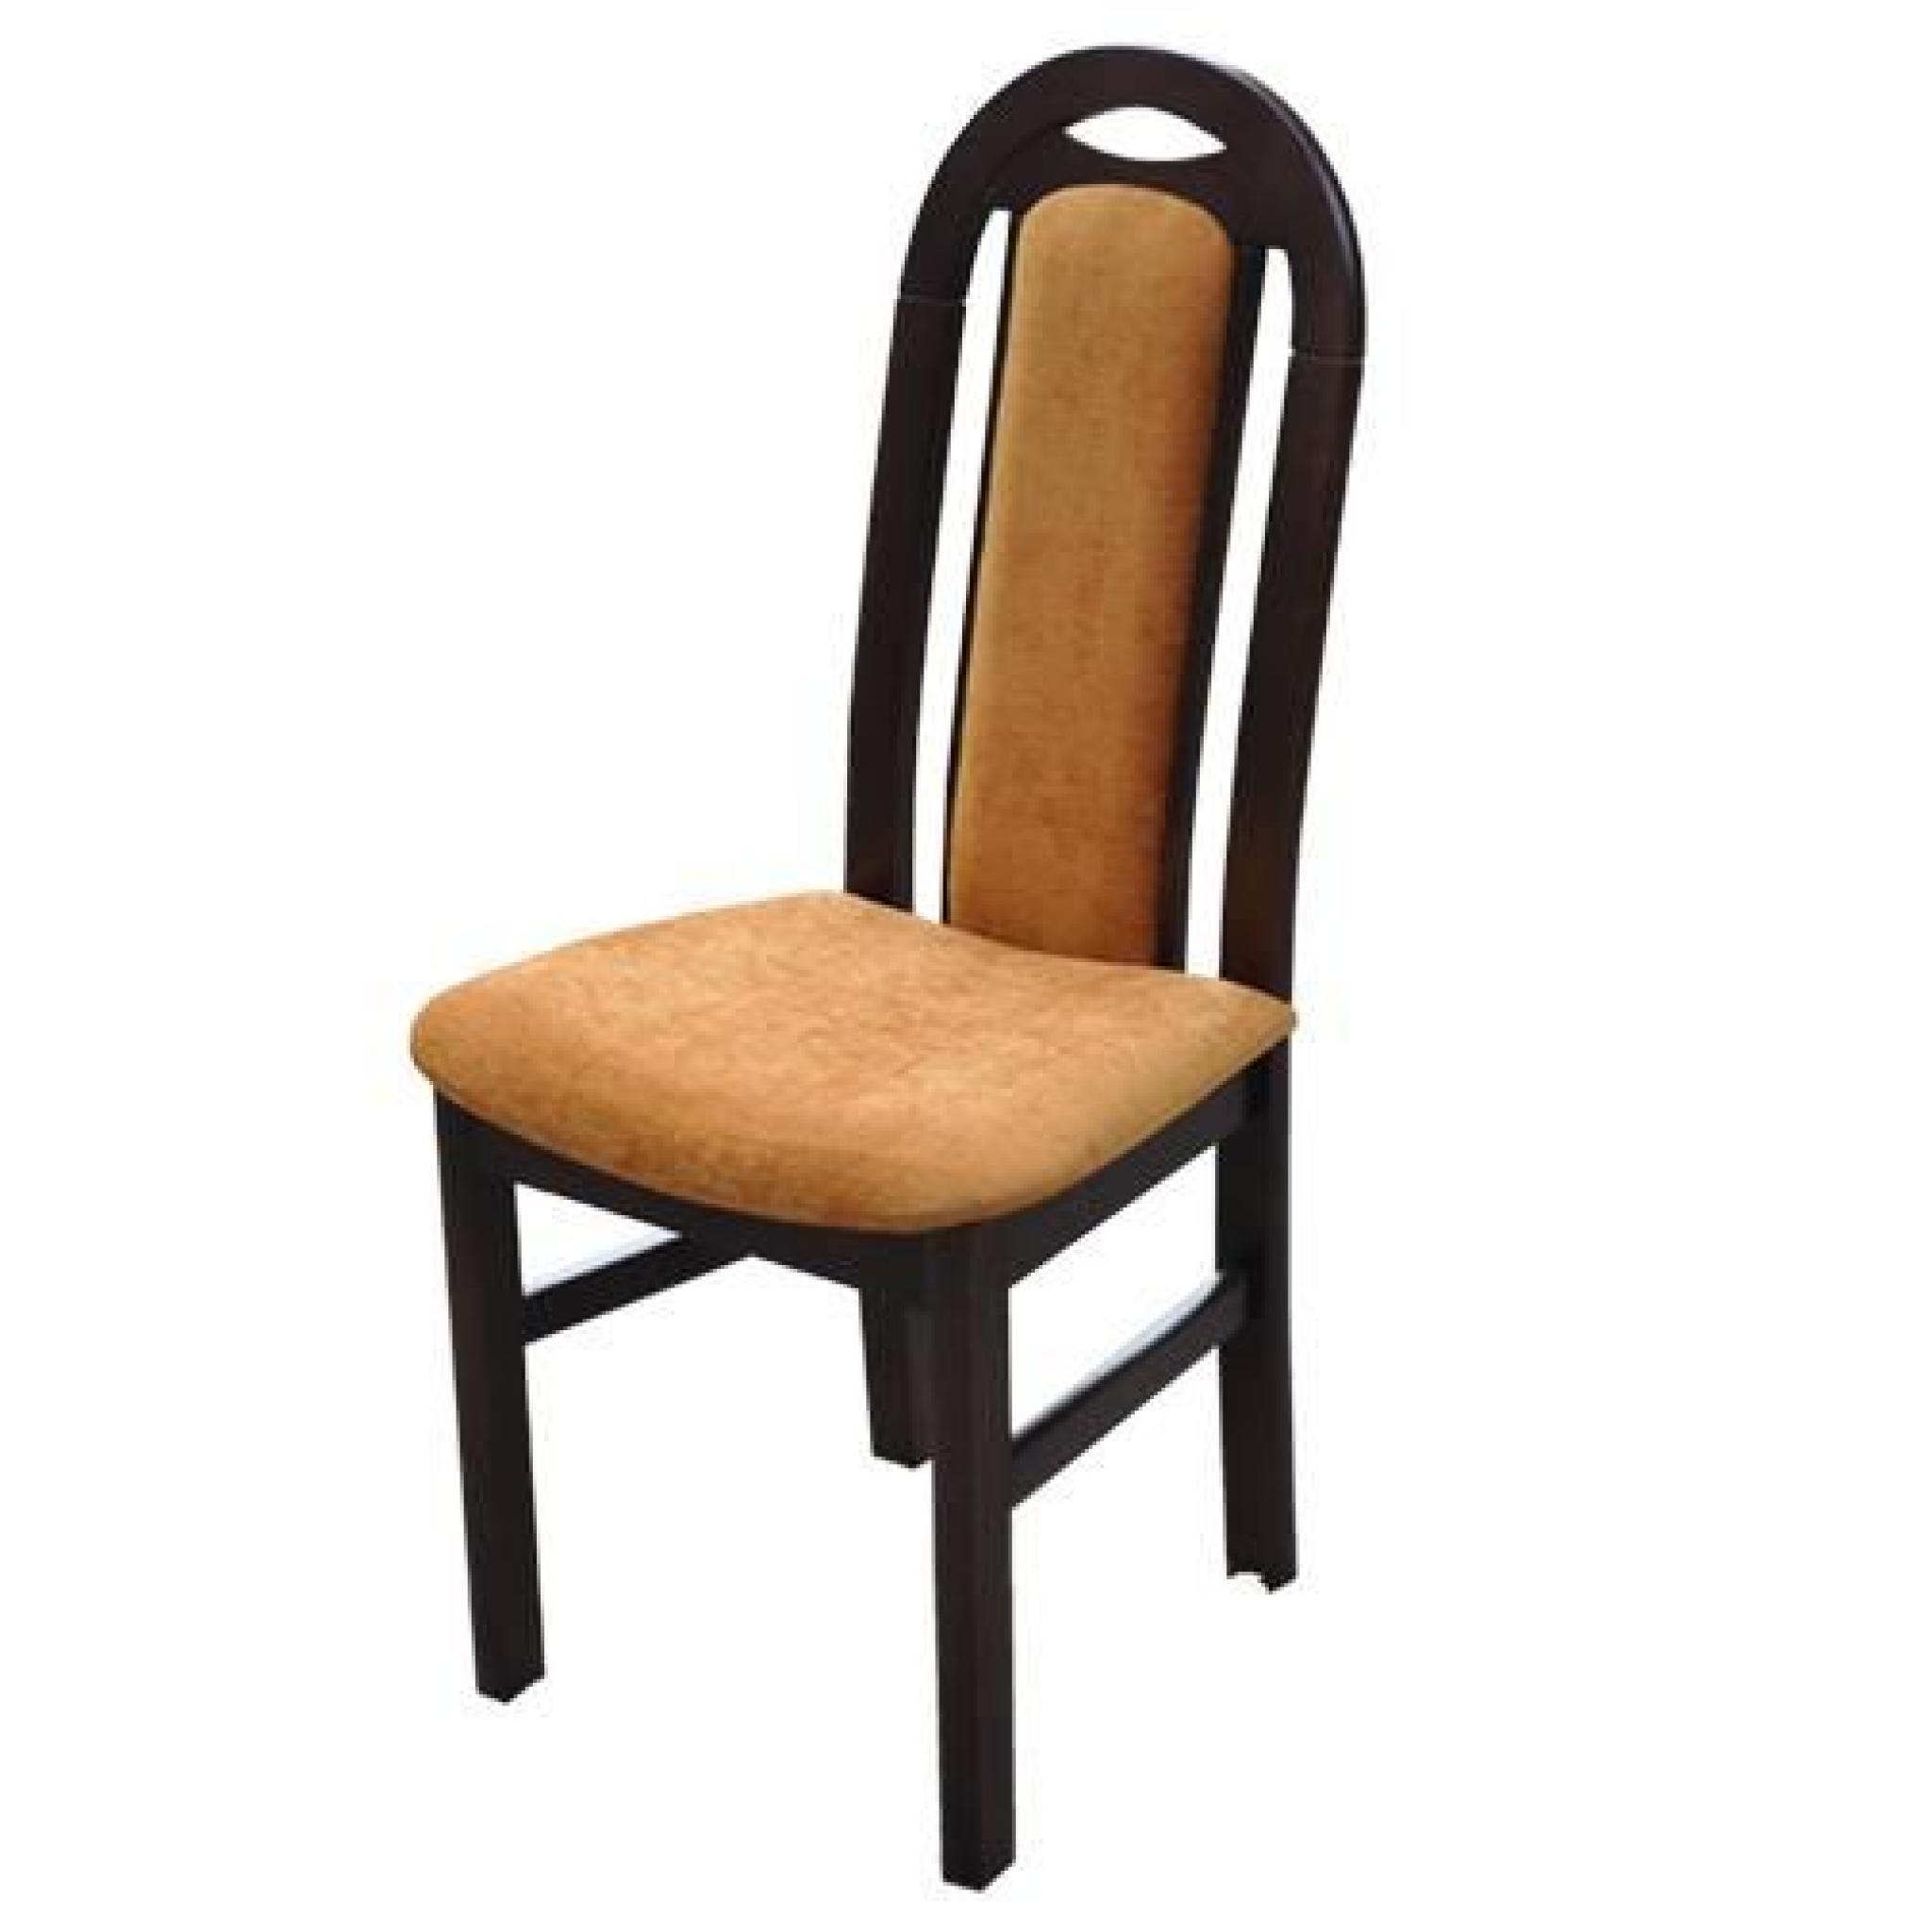 Chaise Salle à Manger Chairwood Chaucer L46xP44xH101cm